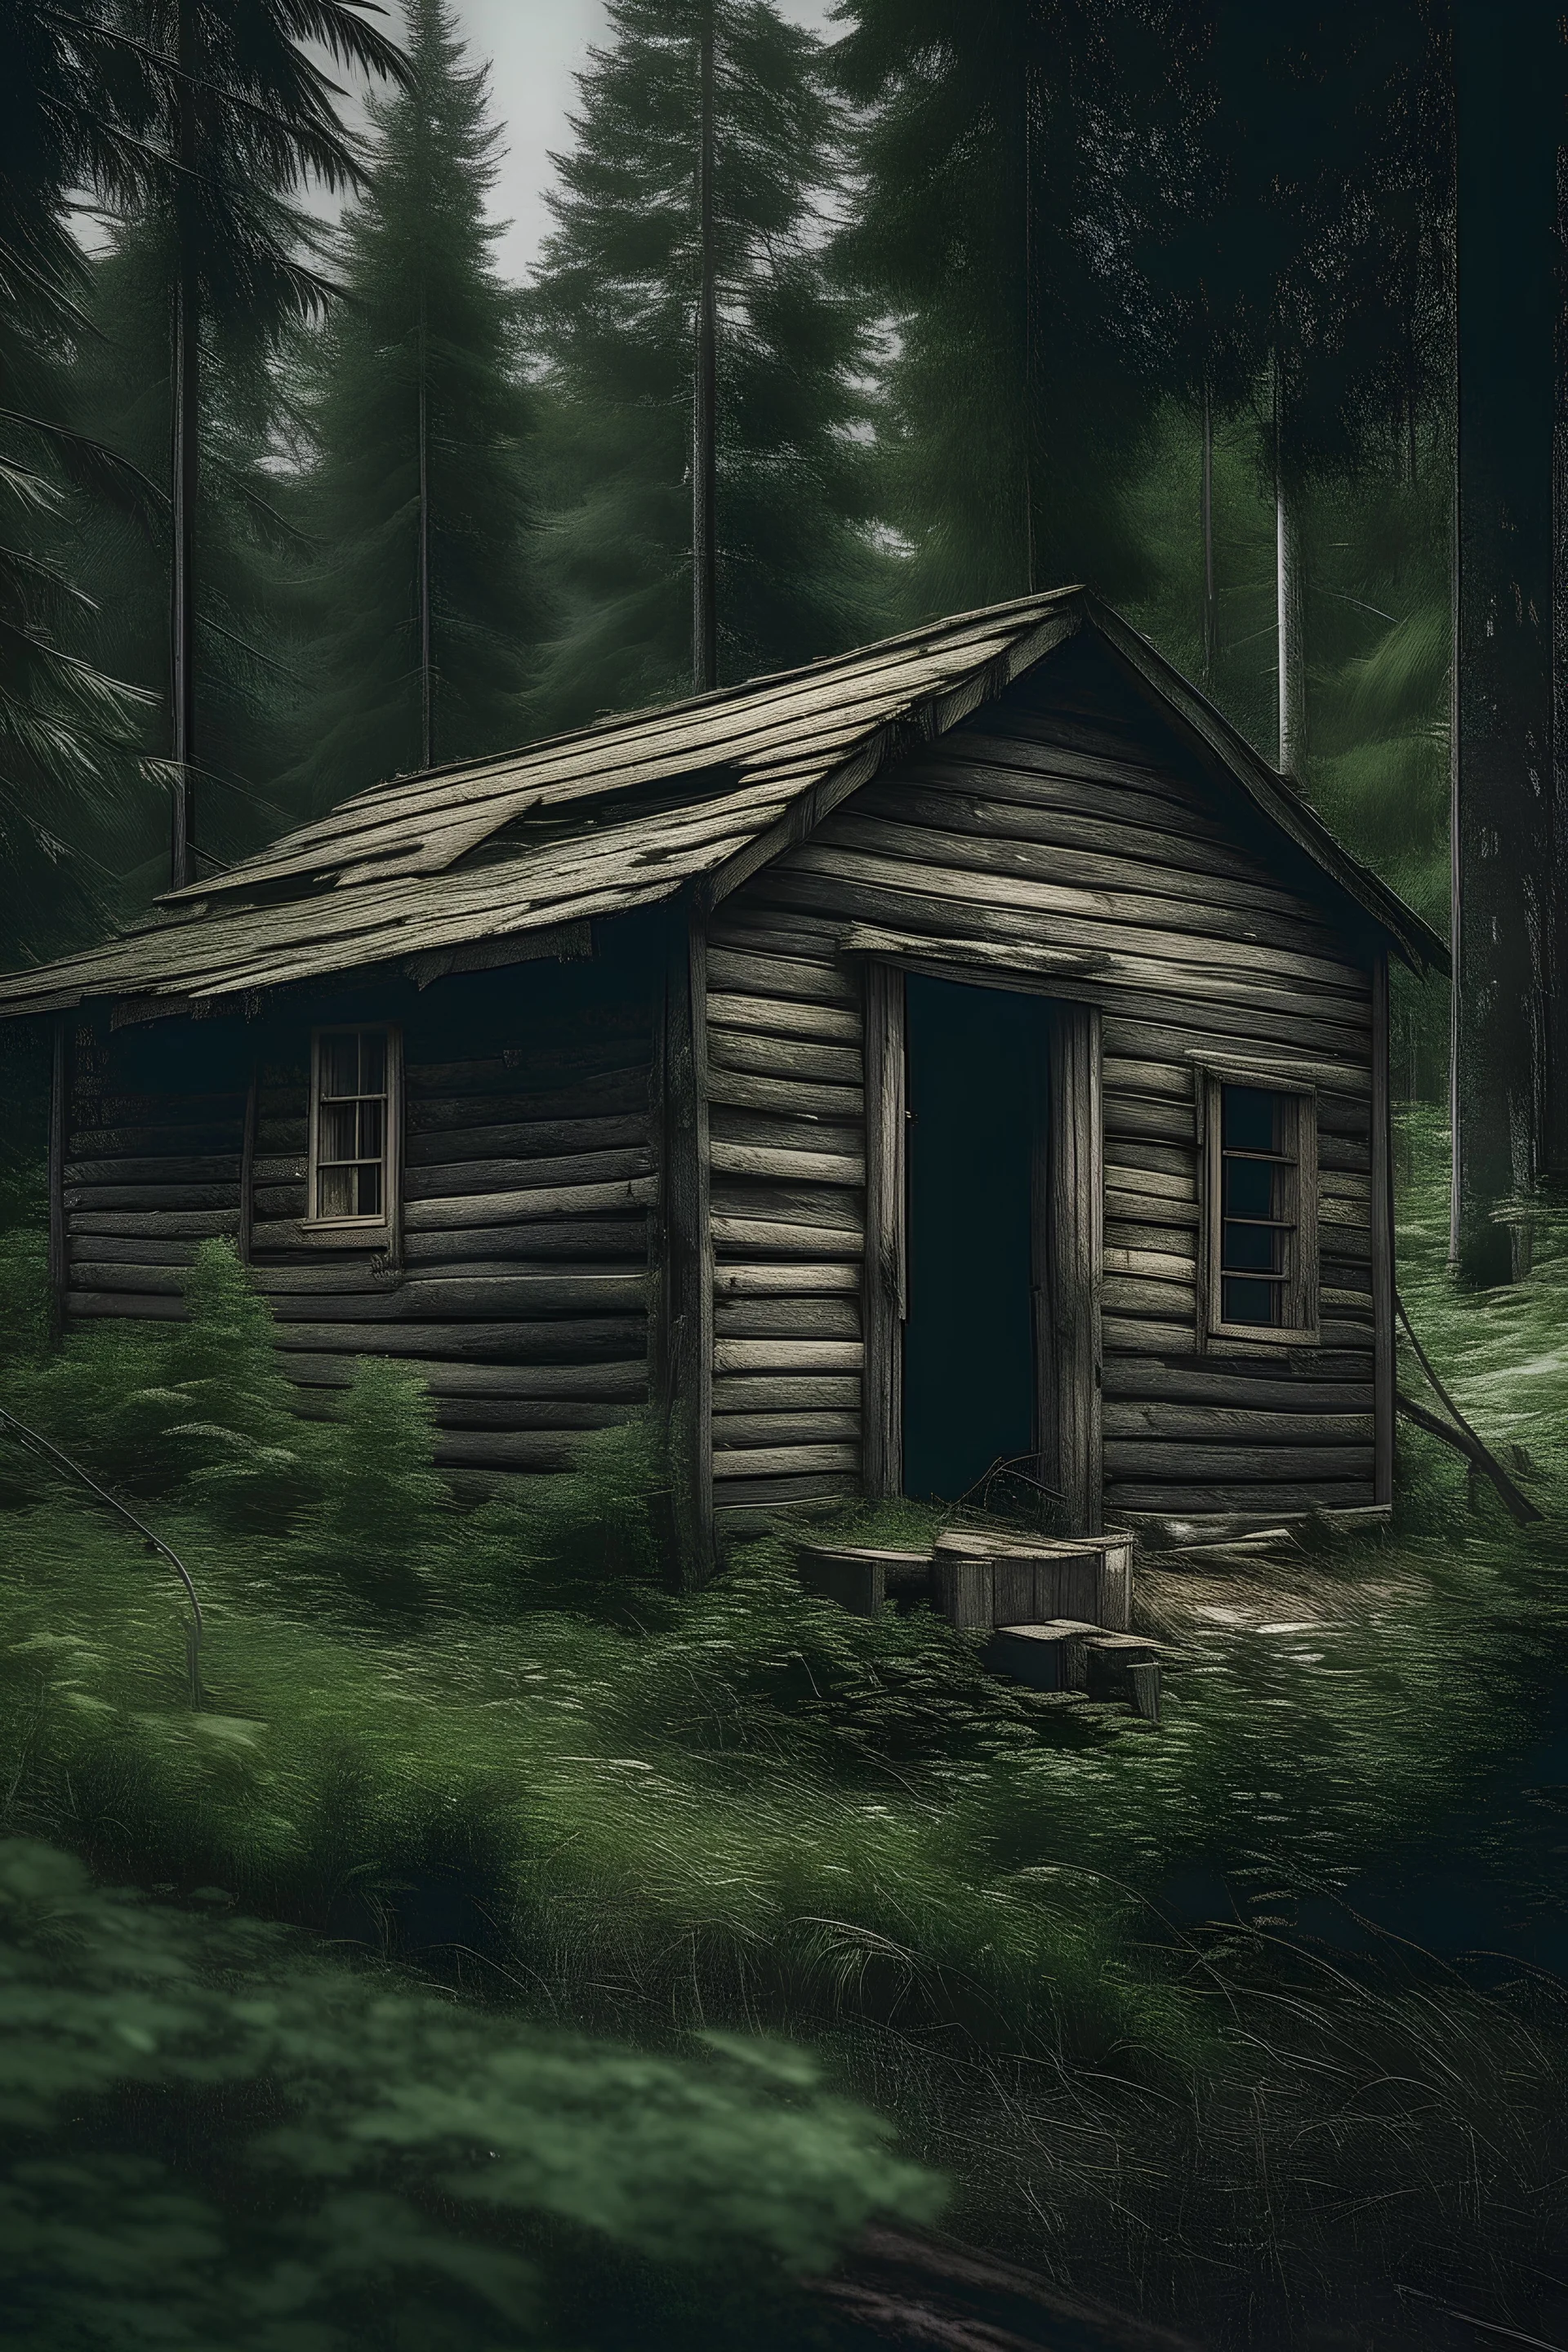 una cabaña vieja saliendo del bosque